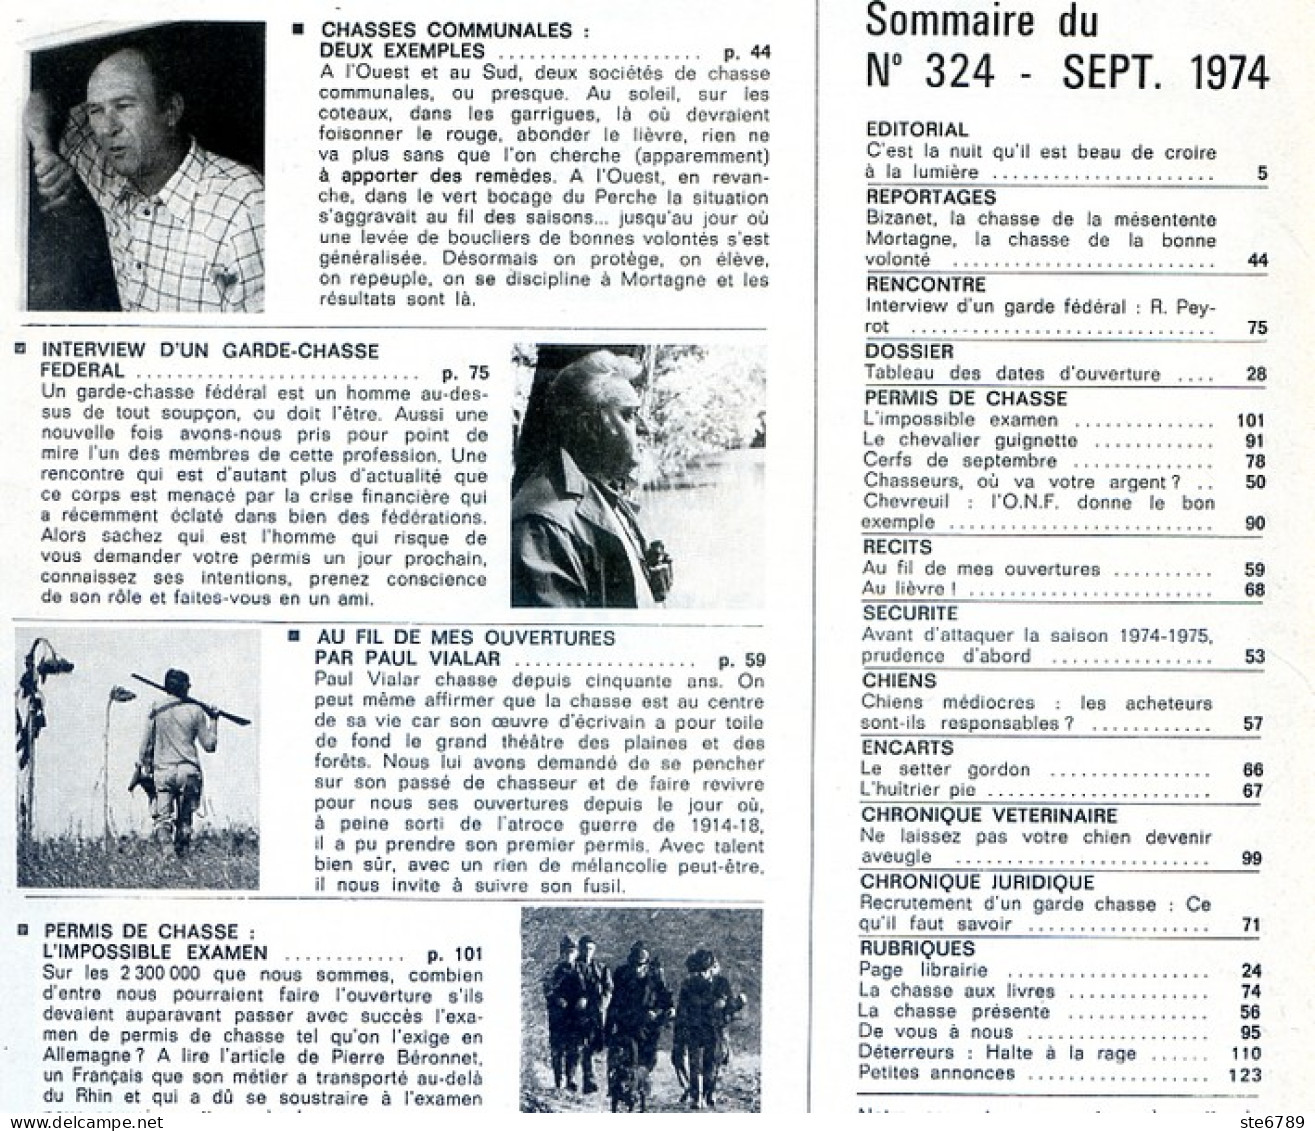 La Revue Nationale De LA CHASSE N° 324 Septembre 1974 Bizanet , Setter Gordon , Chasses Communales - Caza & Pezca